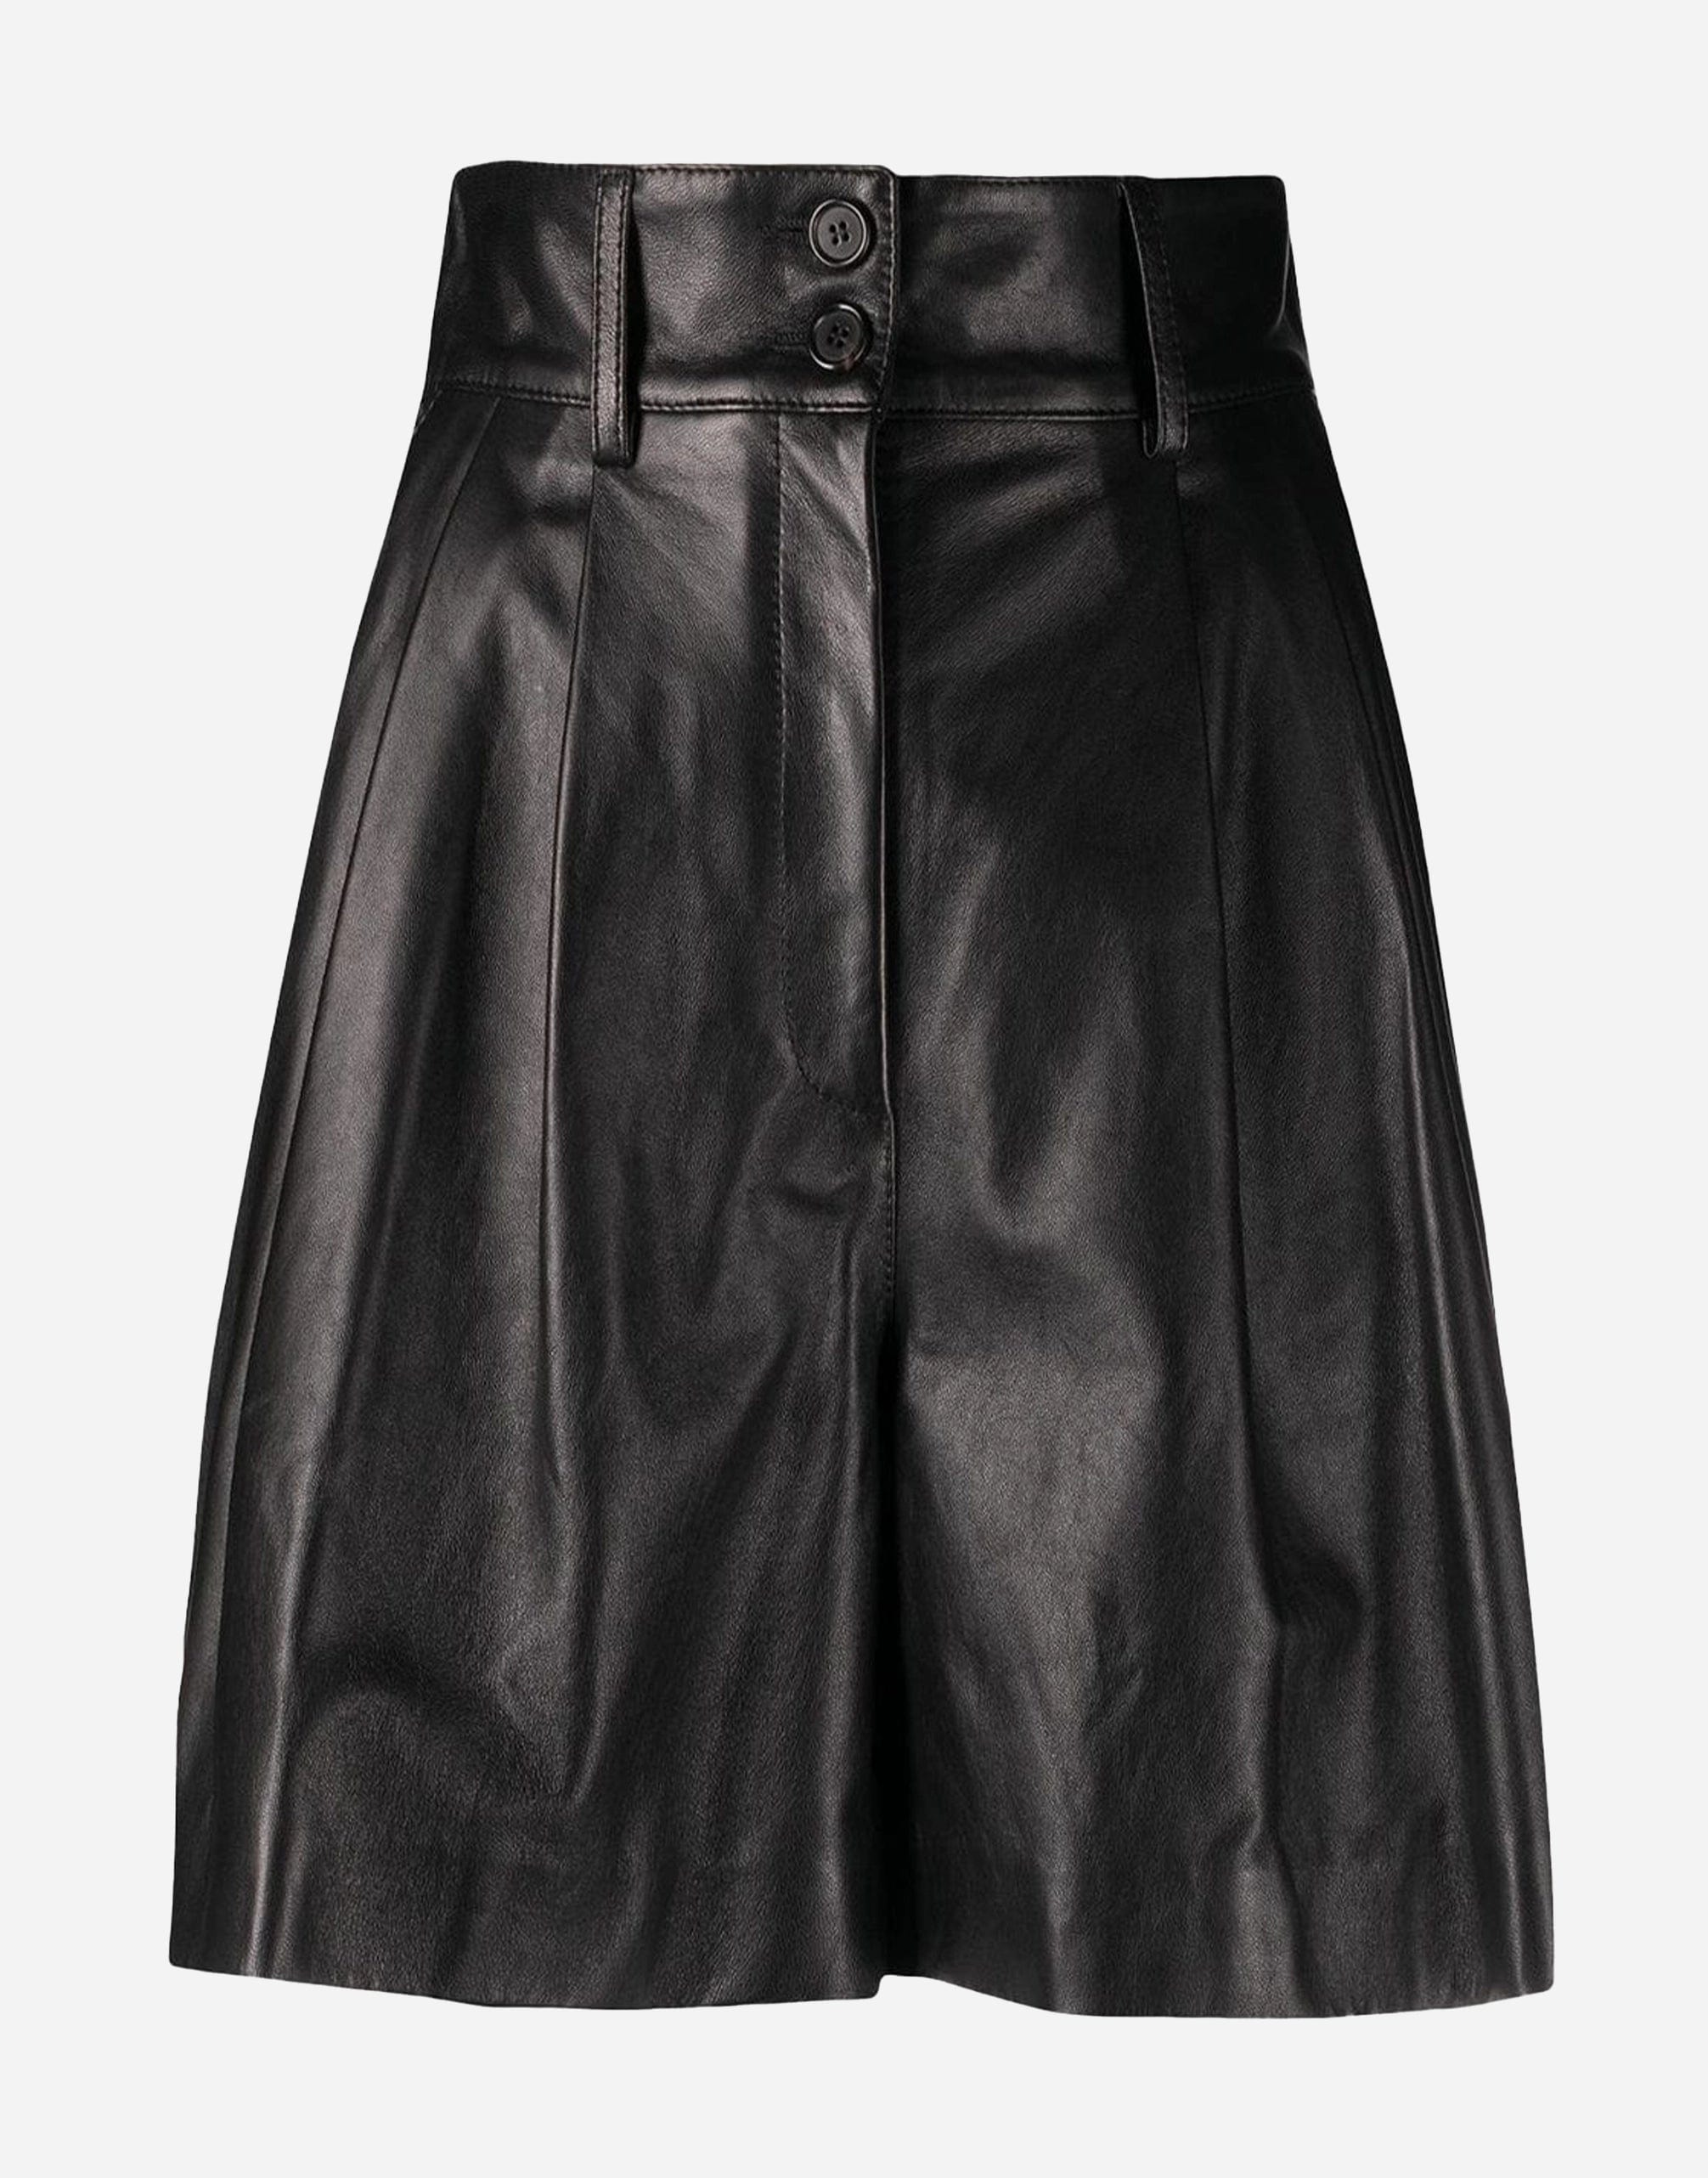 Dolce & Gabbana High-Waisted Leather Shorts